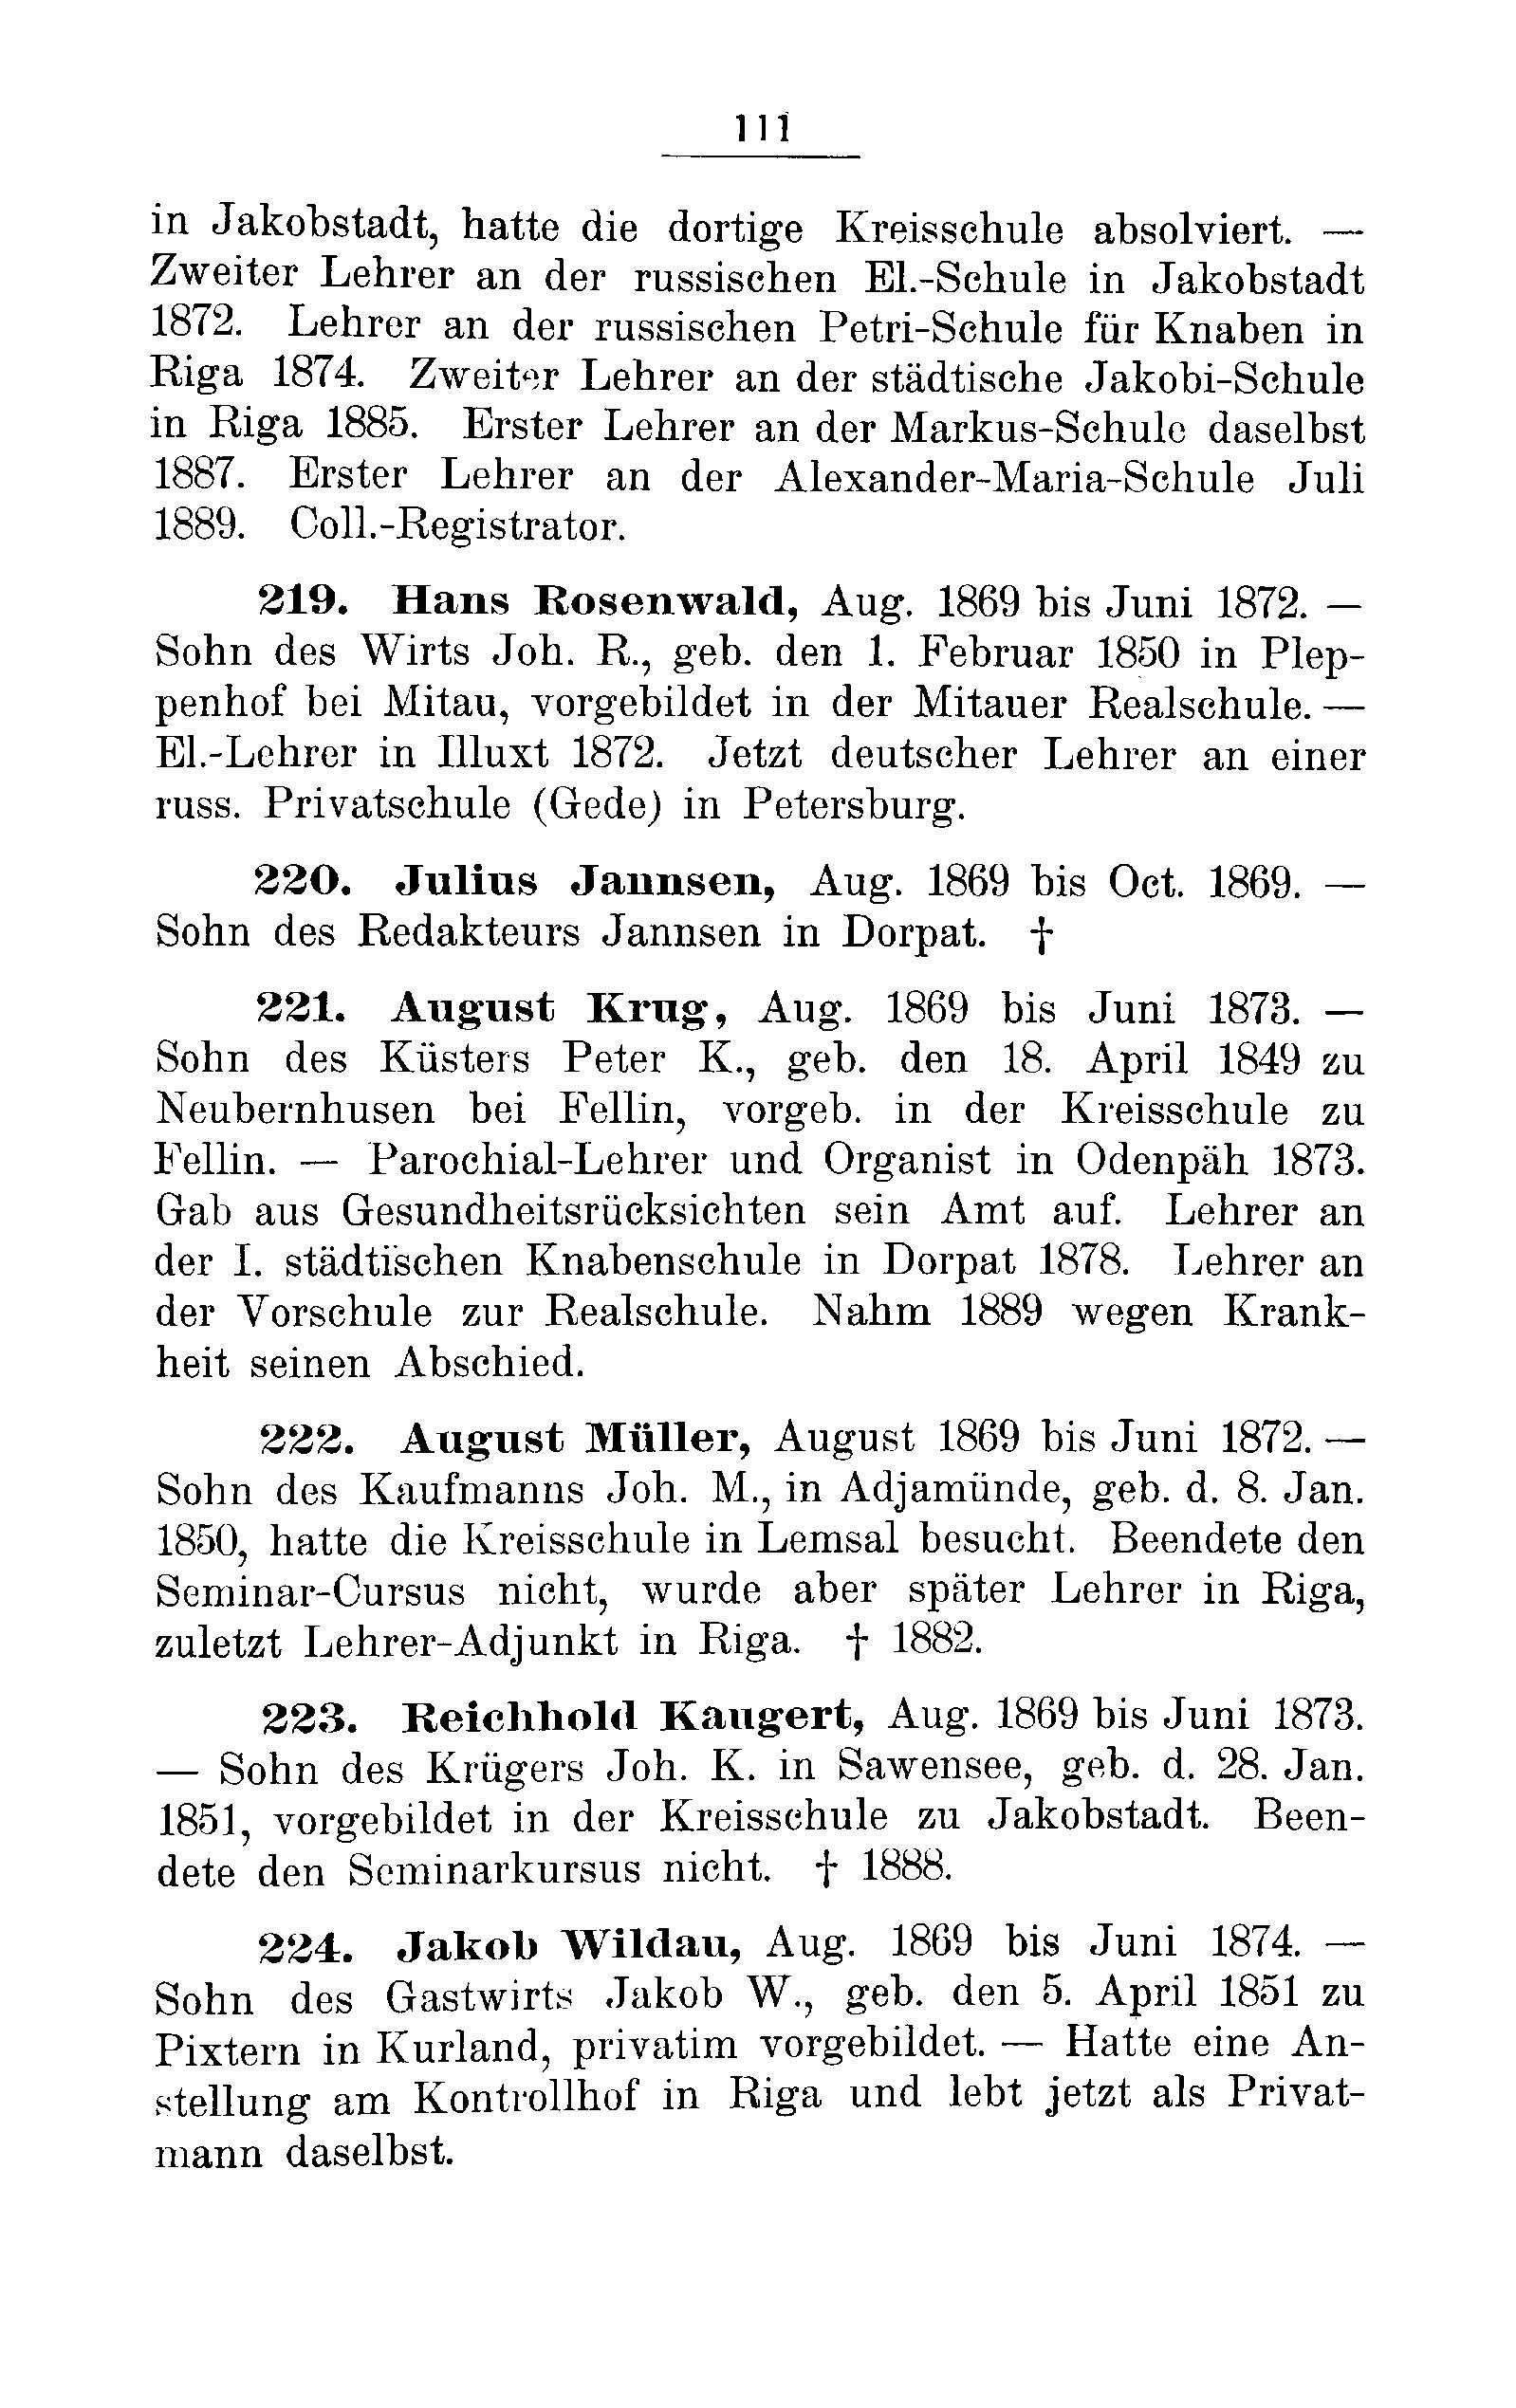 Das Erste Dorpatsche Lehrer-Seminar (1890) | 114. Main body of text